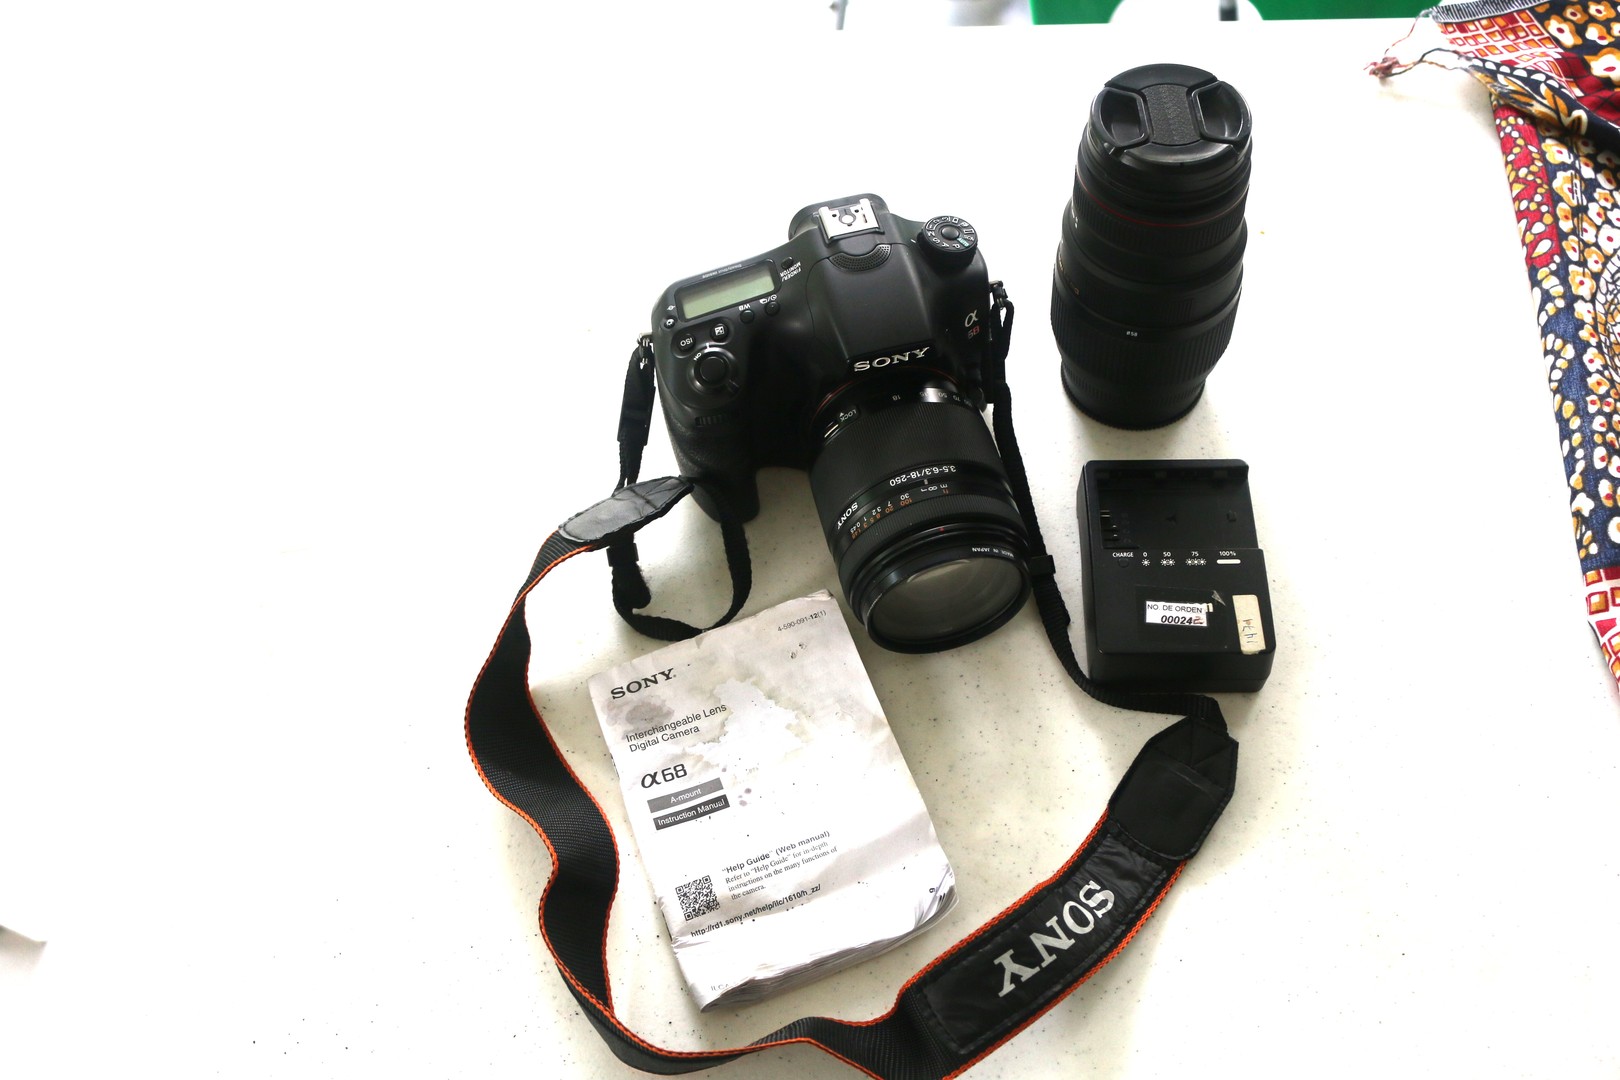 camaras y audio - Camara fotografica SONY alfa 68 con lentes 18-250 y 70-300